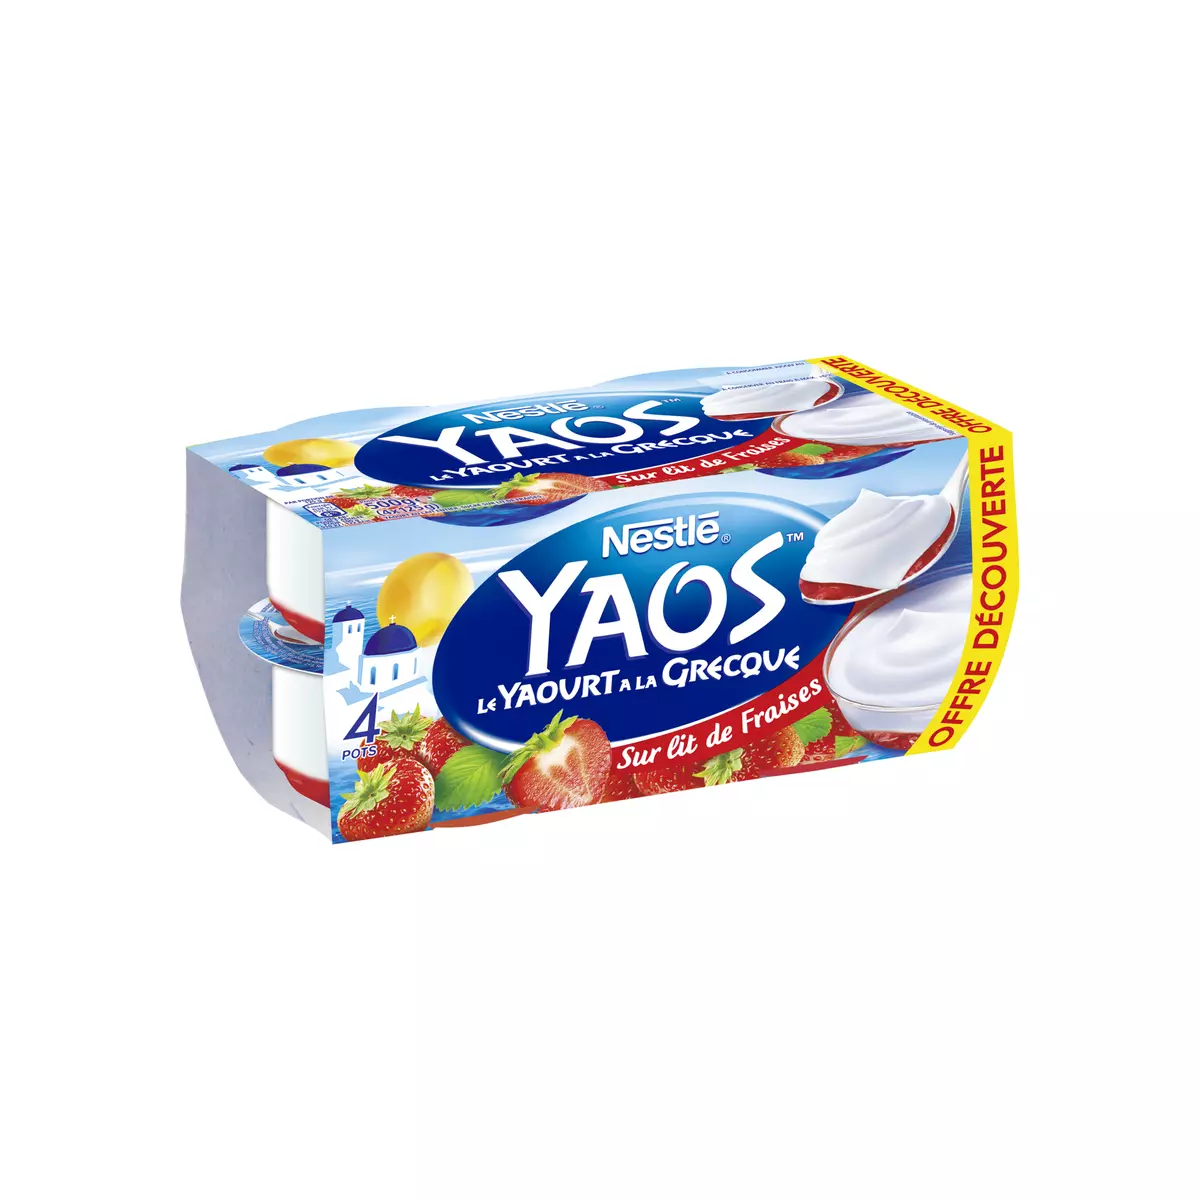 YAOS Yaourt à la grecque sur lit de fraises 4x125g